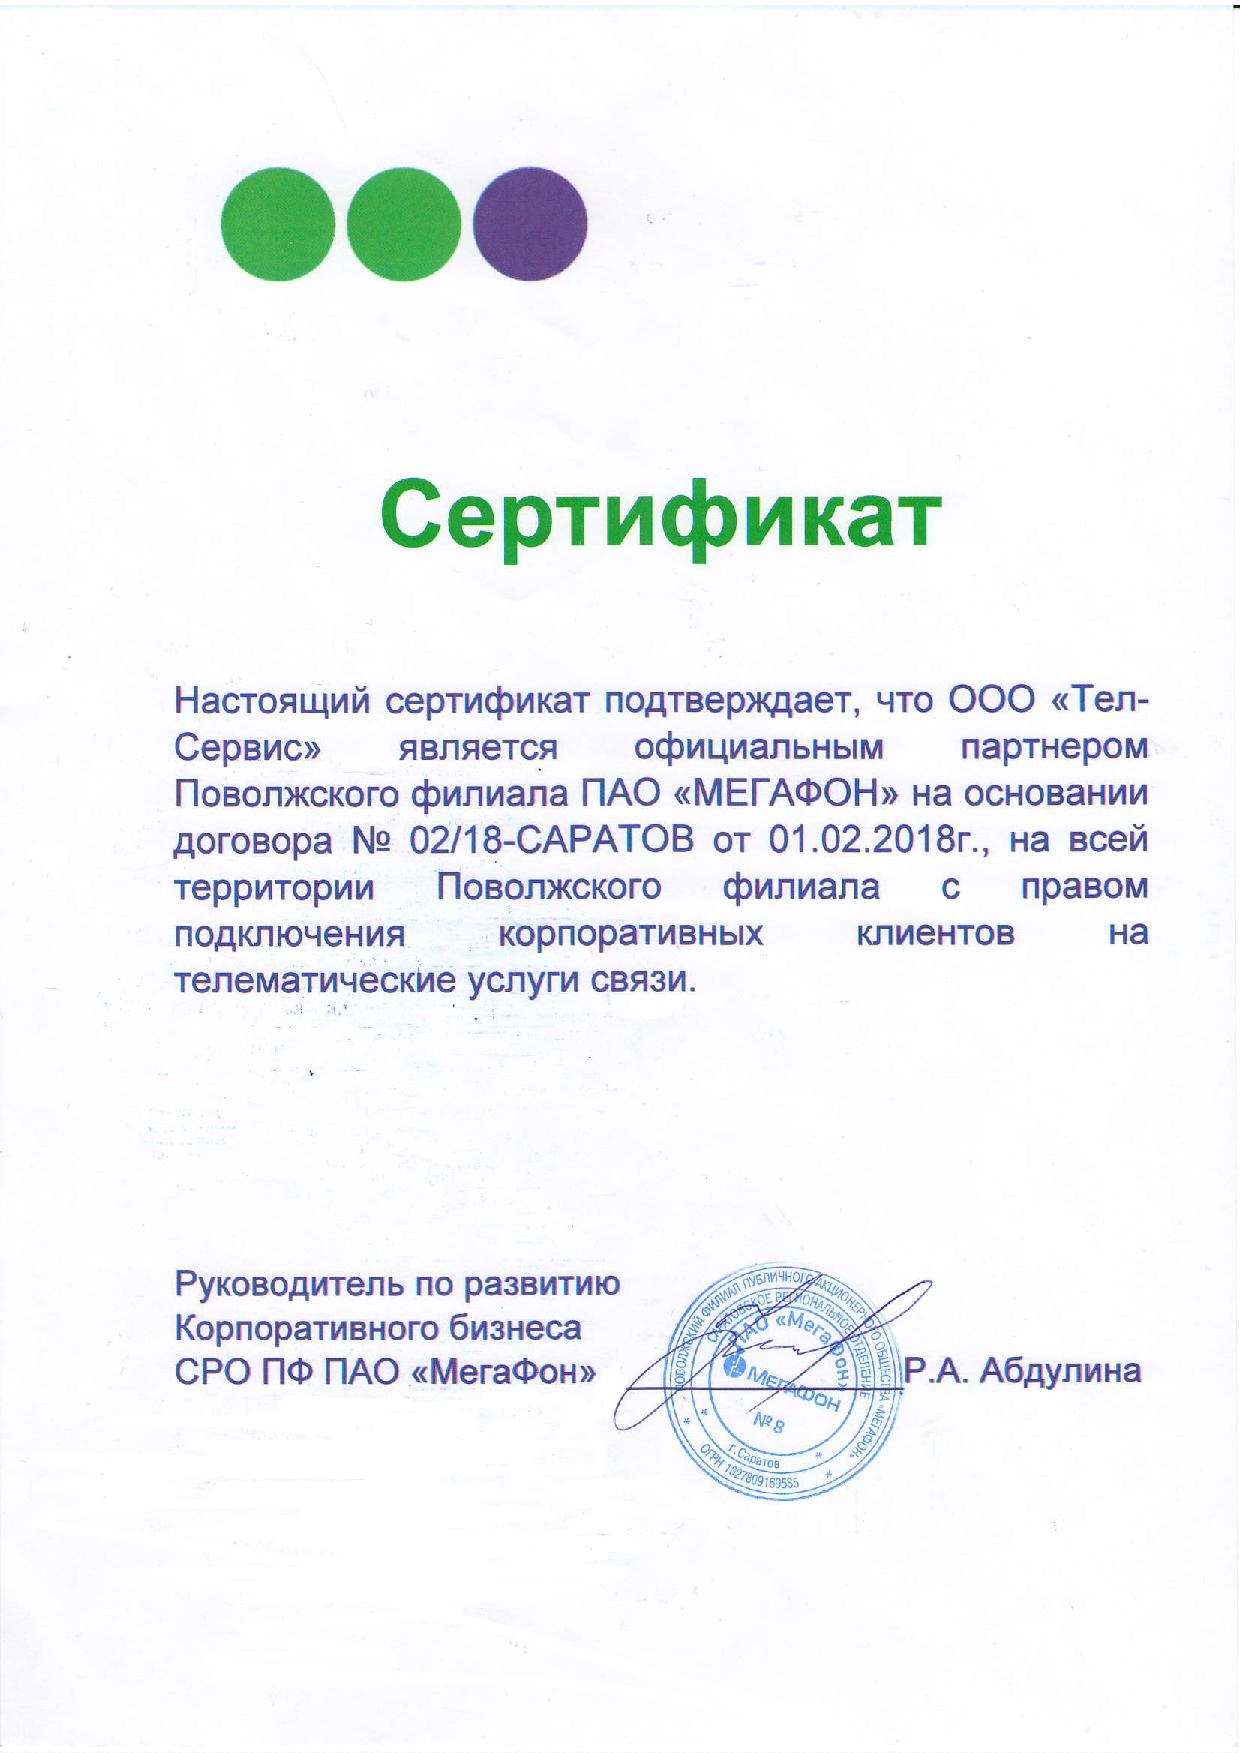 Сертификат Мегафона